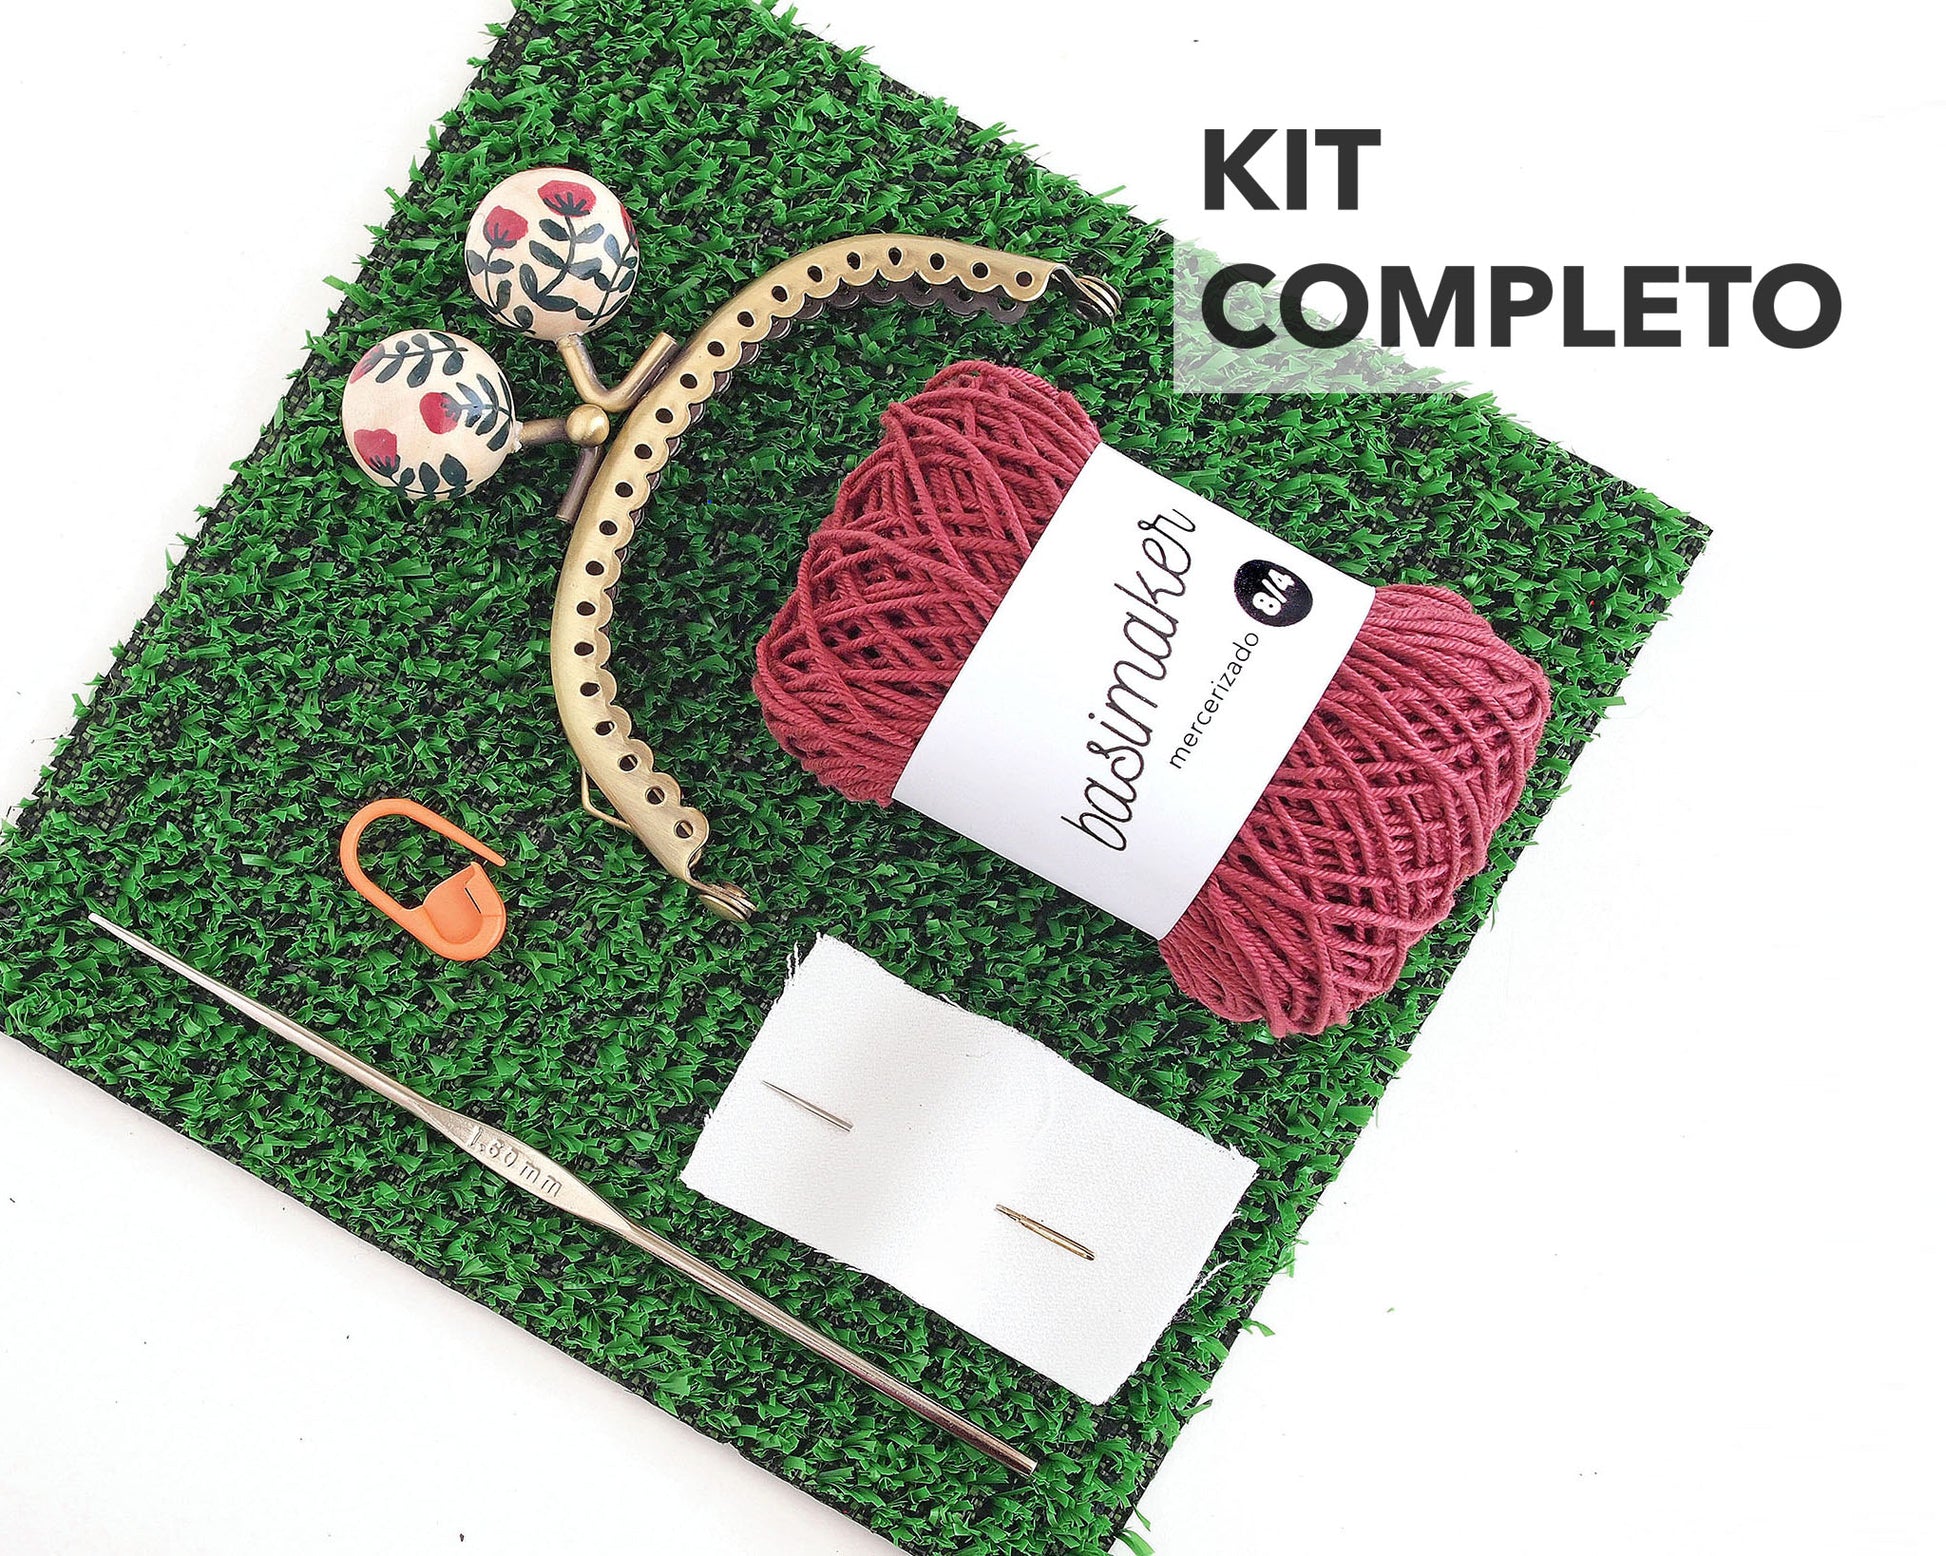 kit completo de crochet con ovillo de hilo de algodón, boquilla redonda con bolas de flores, aguja, gancho de crochet y marcador, sobre cuadrado de césped artificial